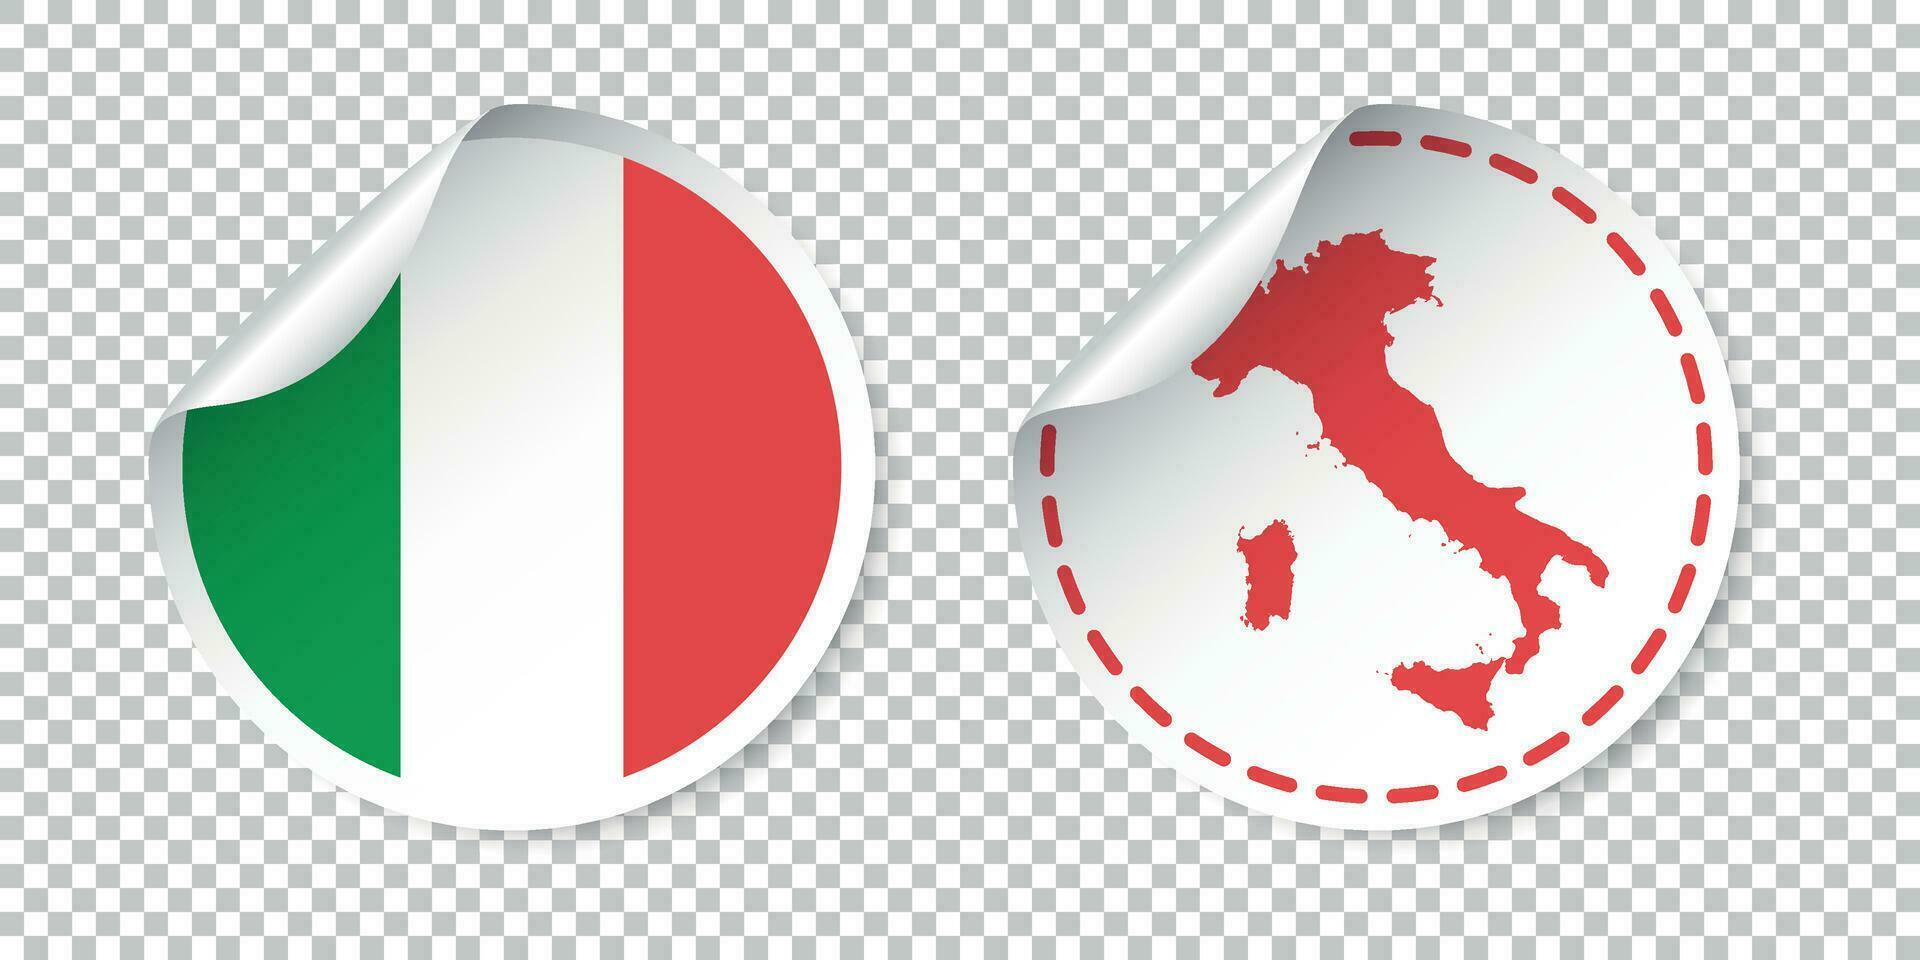 Italia etichetta con bandiera e carta geografica. etichetta, il giro etichetta con nazione. vettore illustrazione su isolato sfondo.